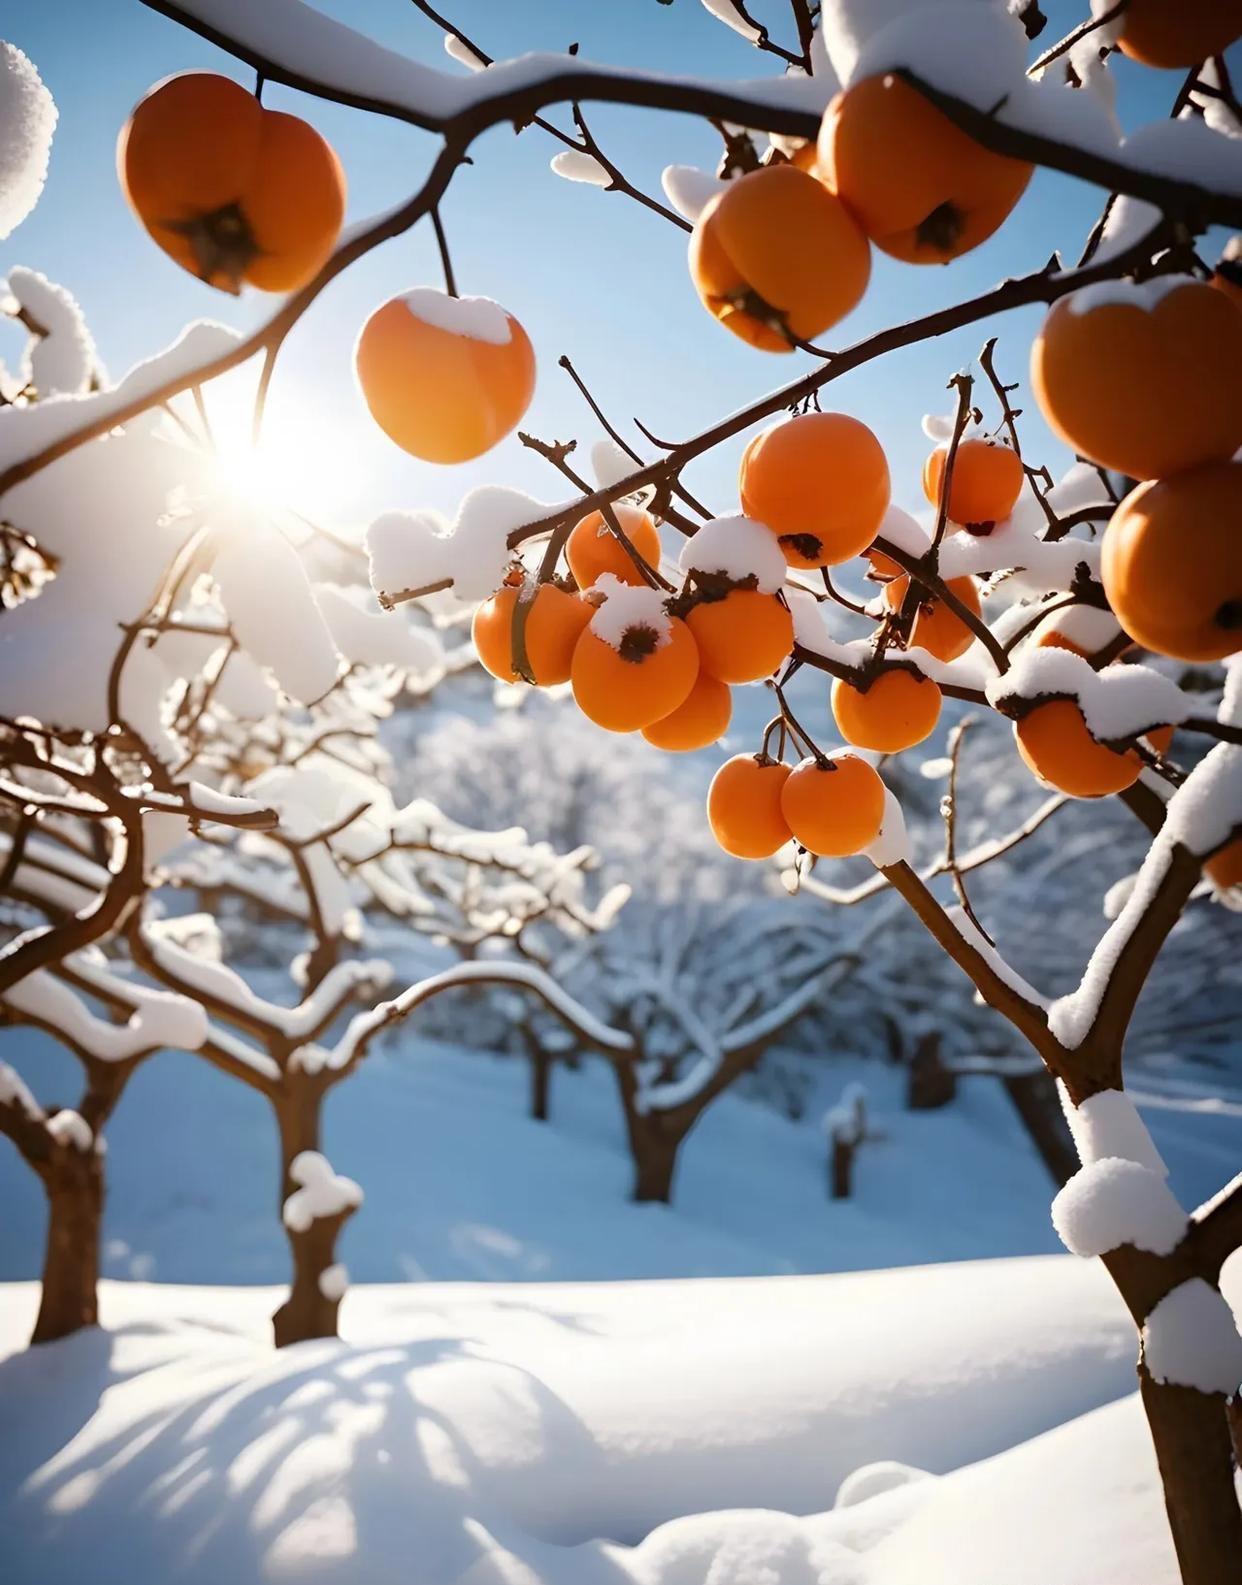 雪中的柿子树,如同一个沉默的诗人,用枝头的柿子书写着秋天的故事